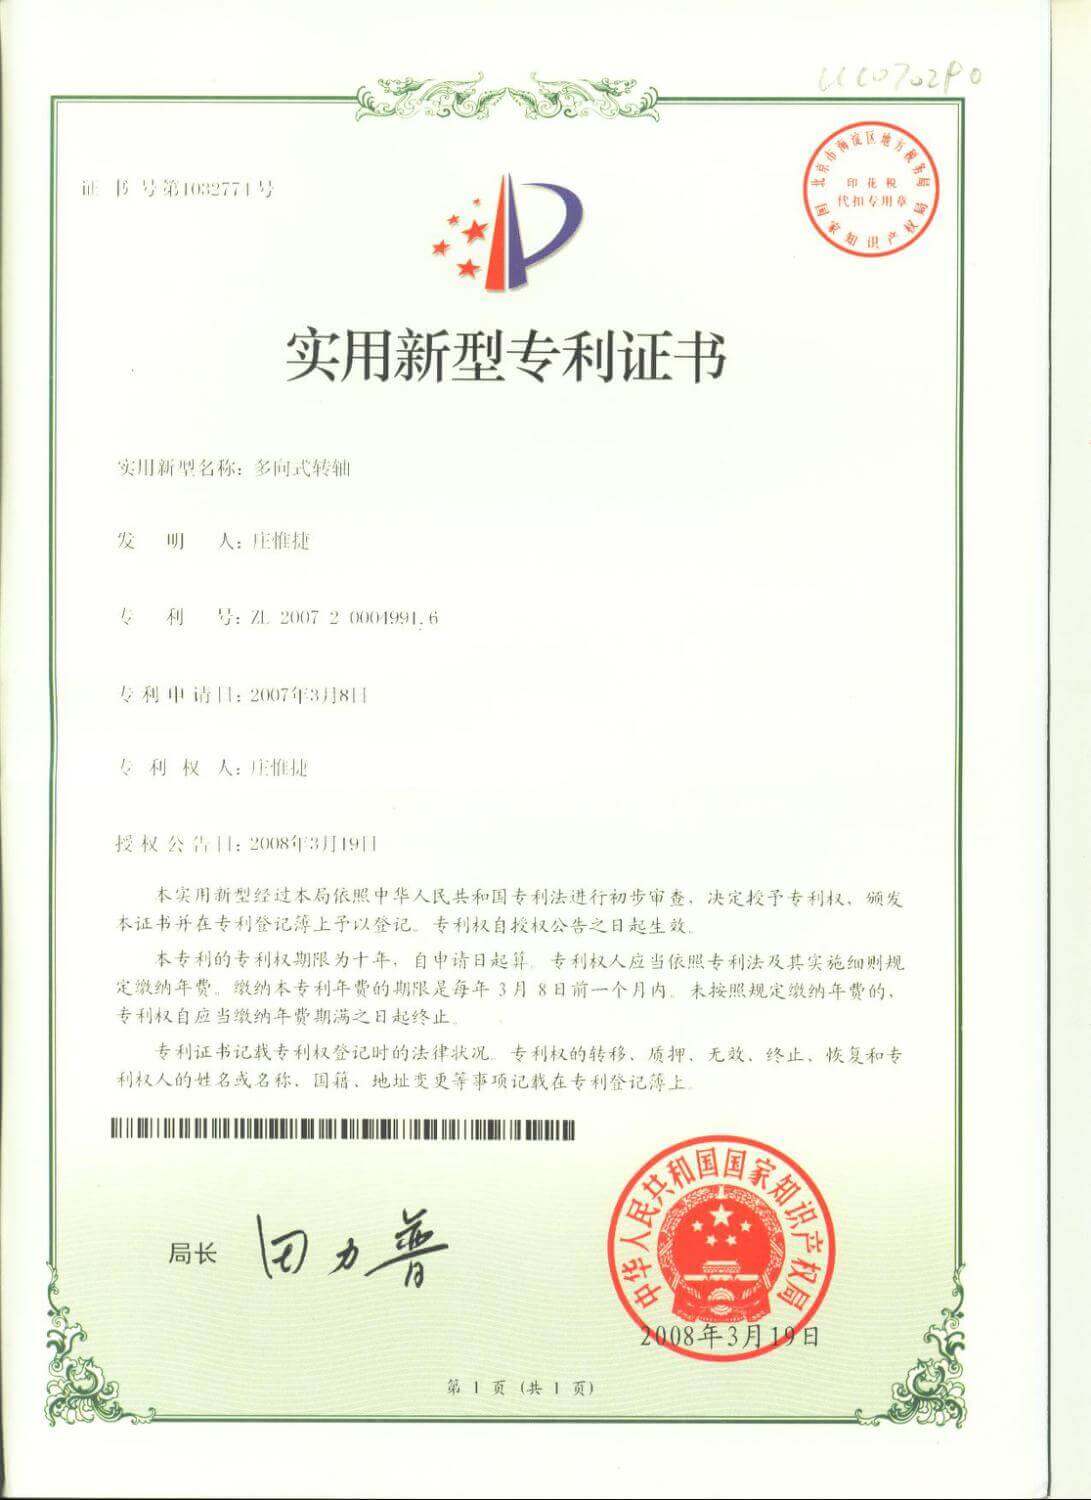 Chienfu-tec CNC patents in Taiwan-3